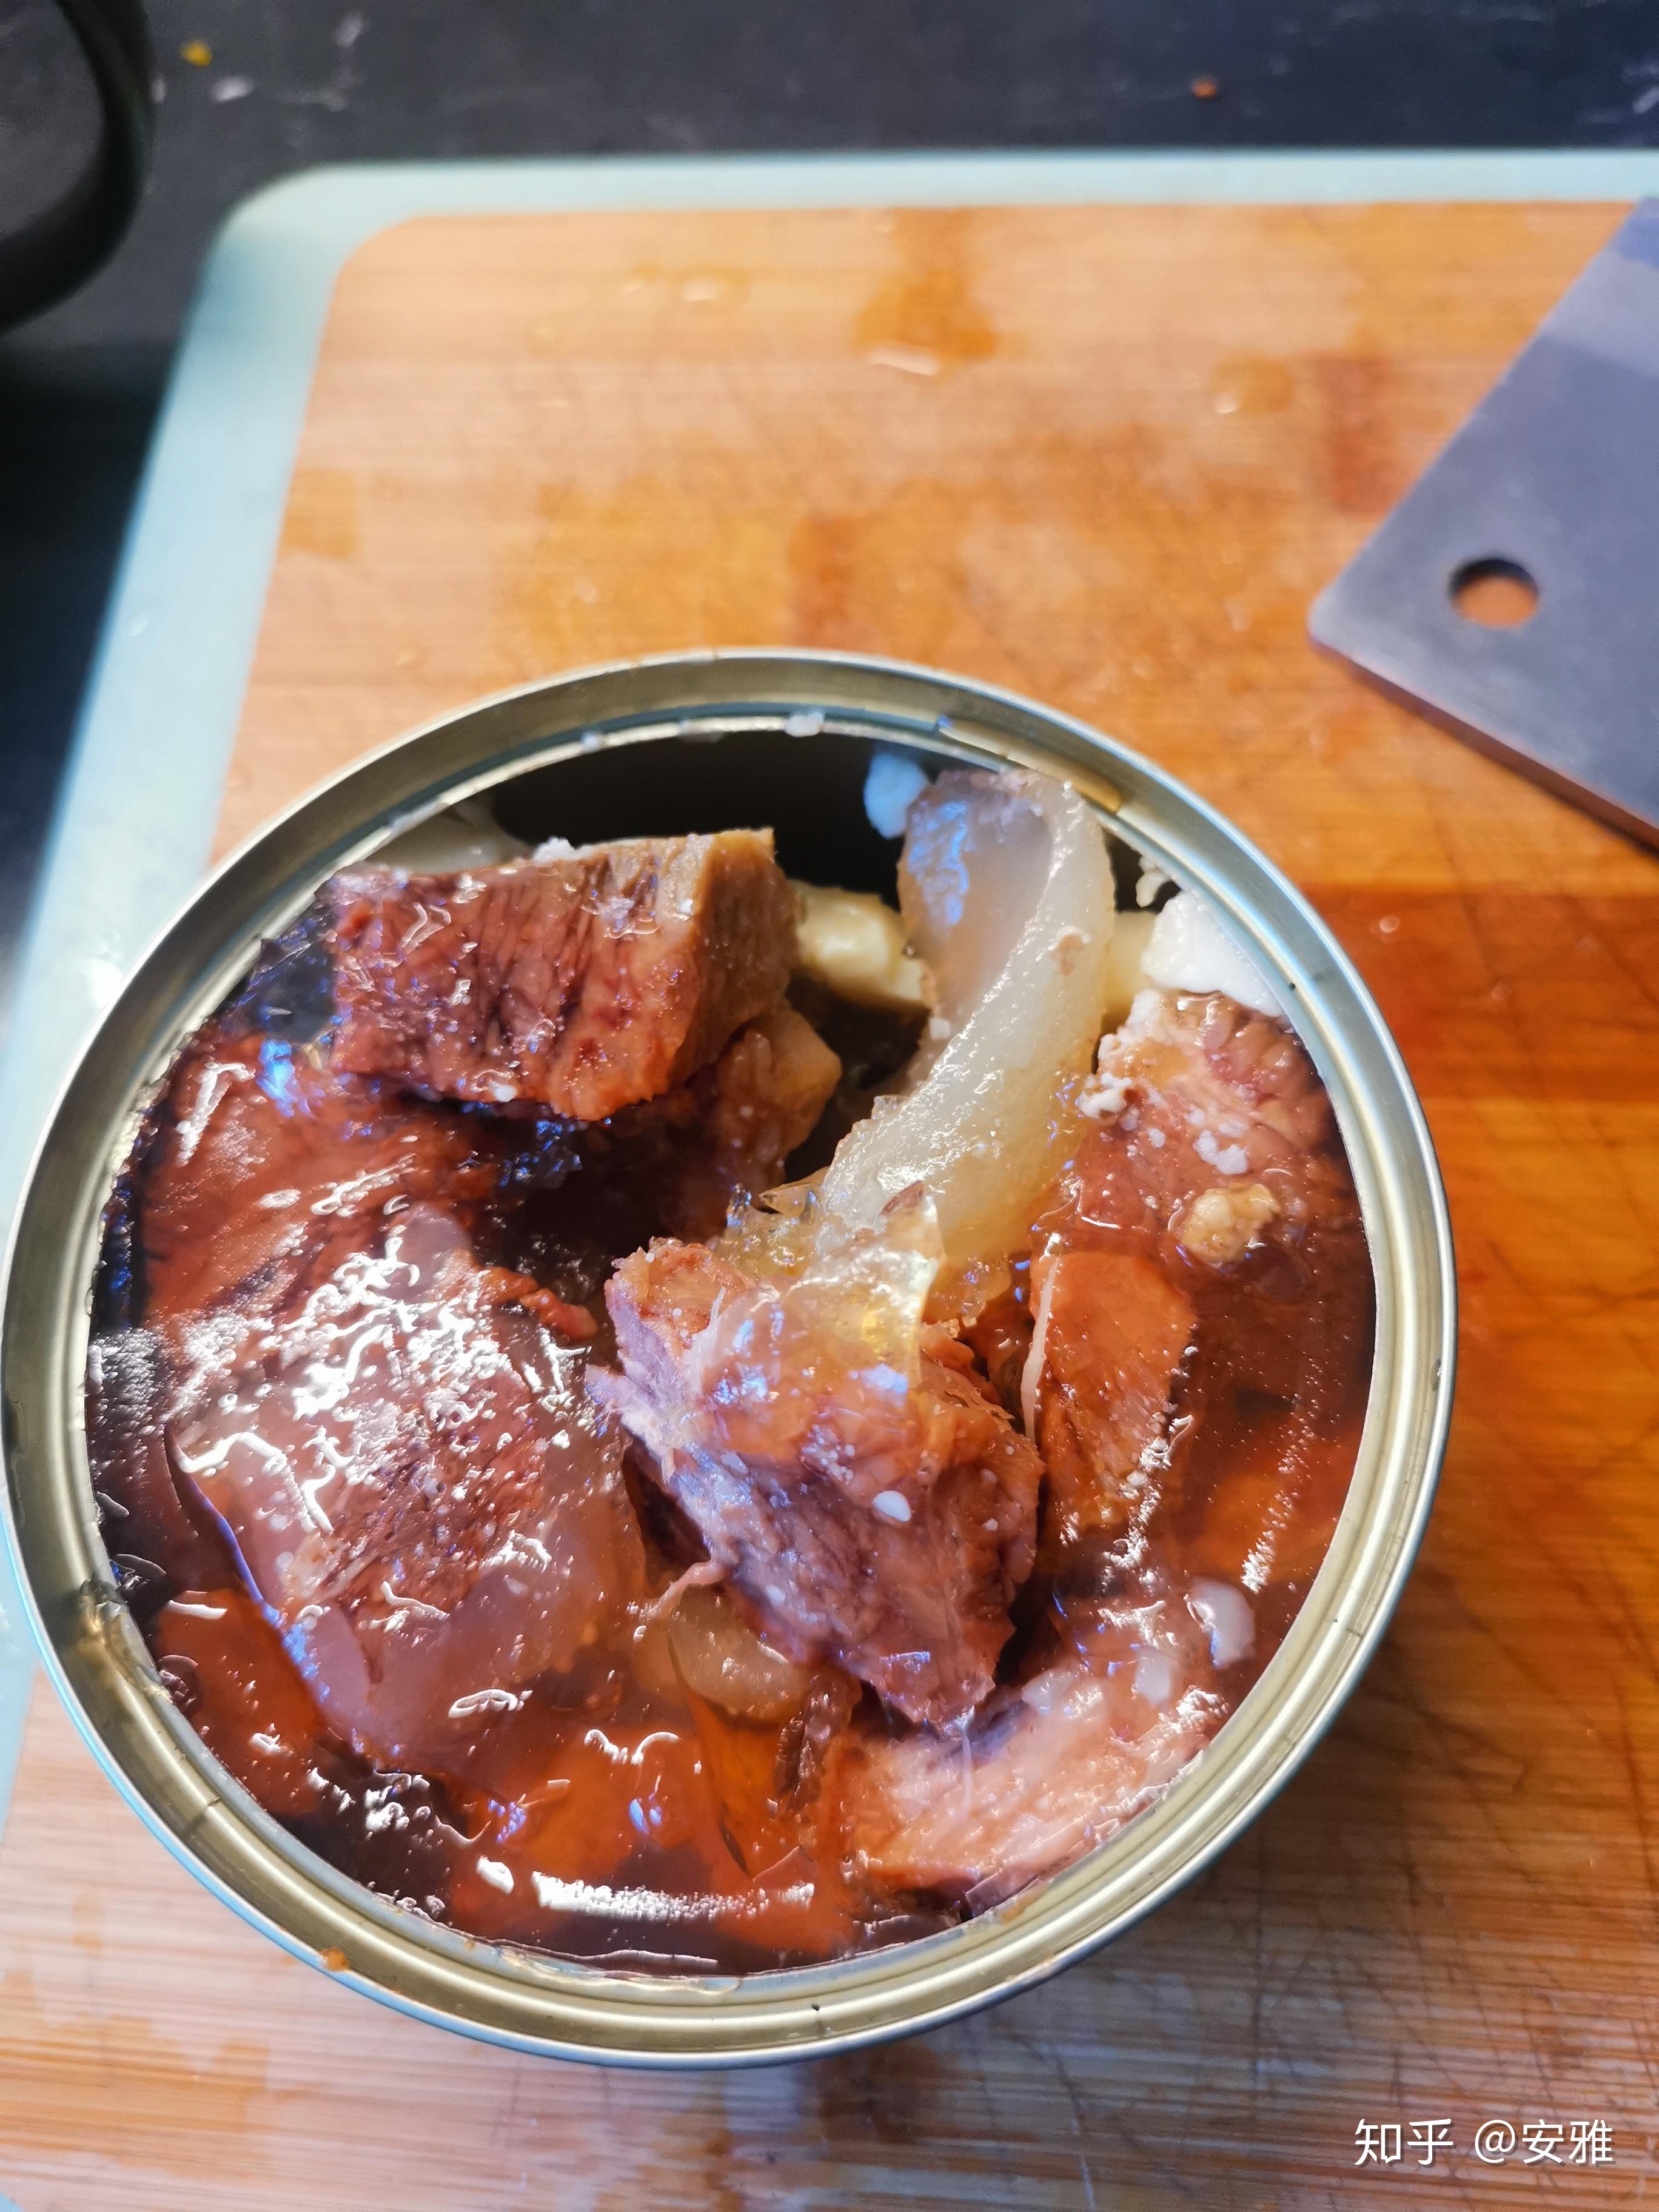 拉开拉环罐头盖,里面是这样的:这个竹岛半筋半肉罐头包装很有古早味